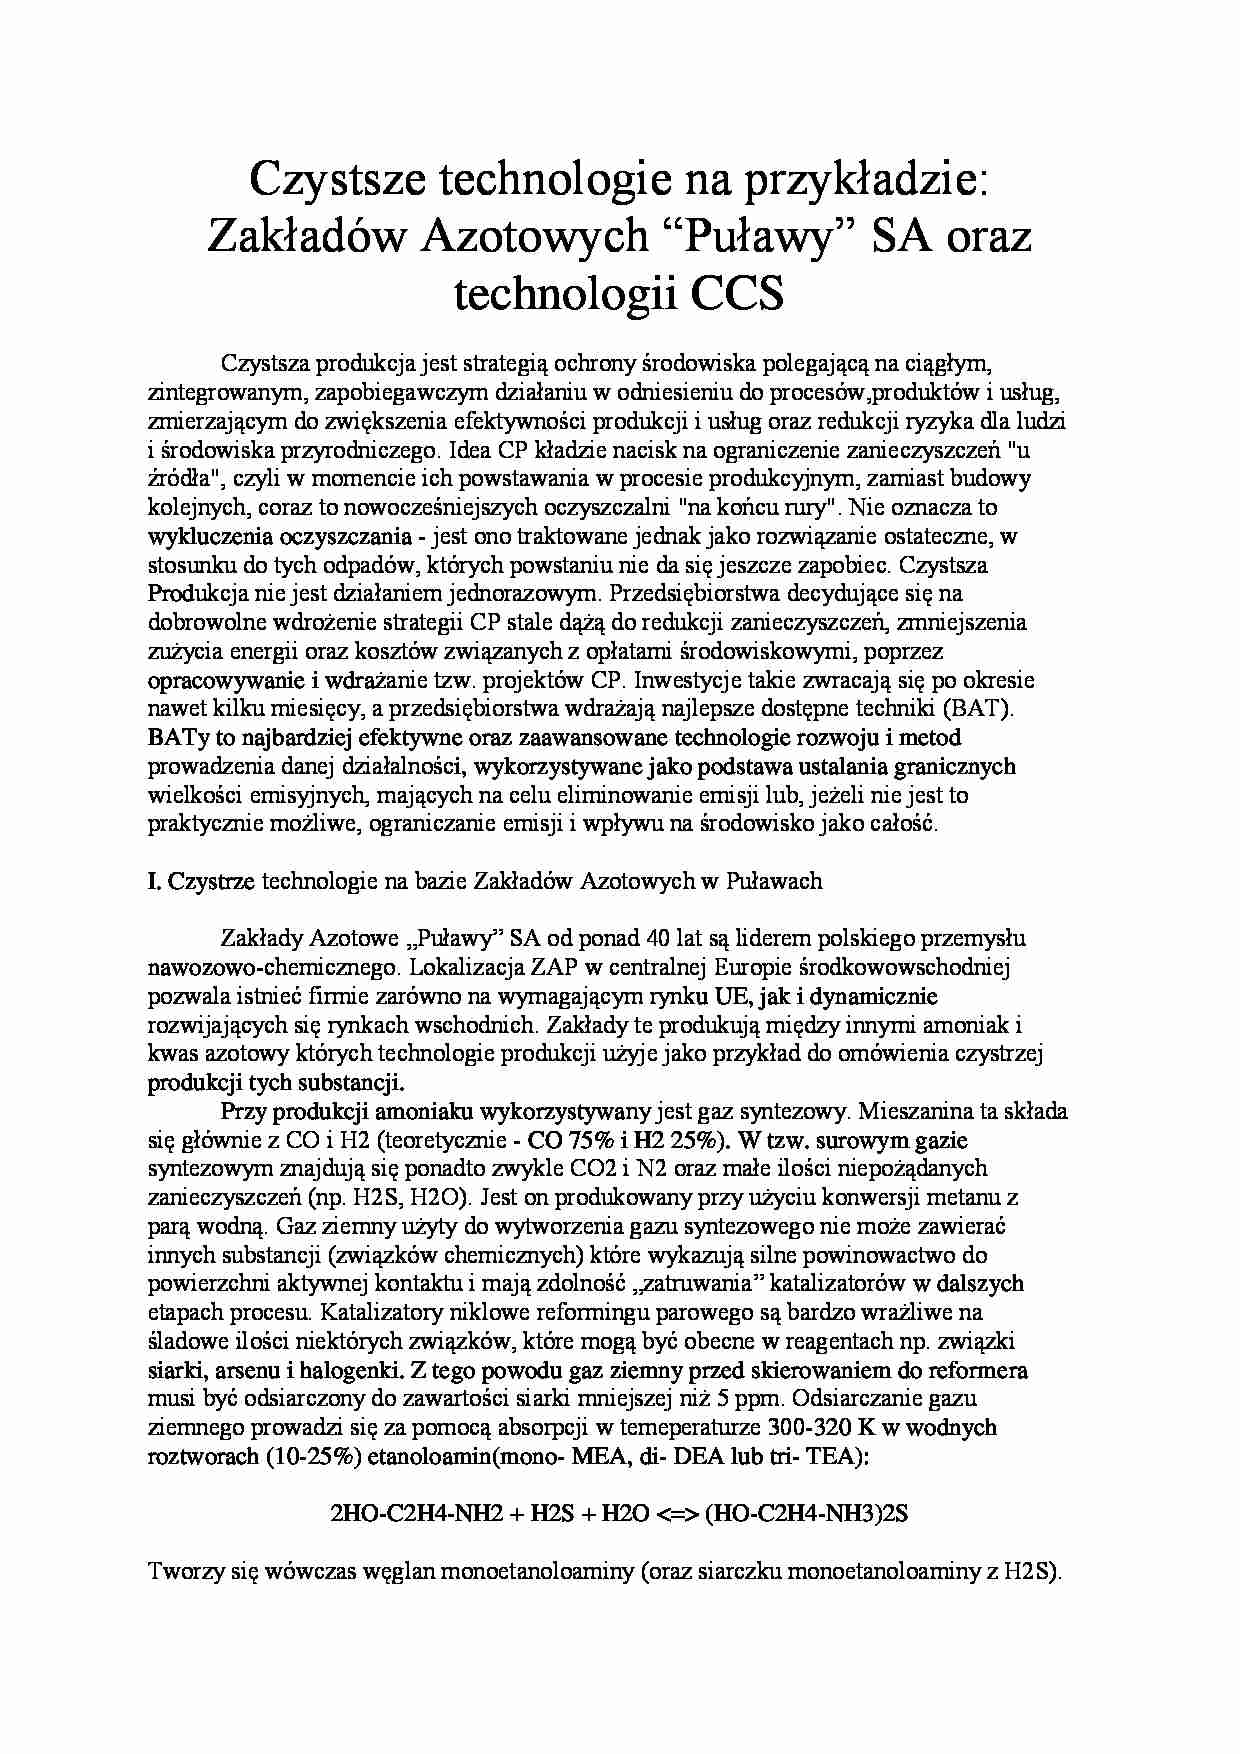 Czystsze technologie chemiczne-opracowanie - strona 1